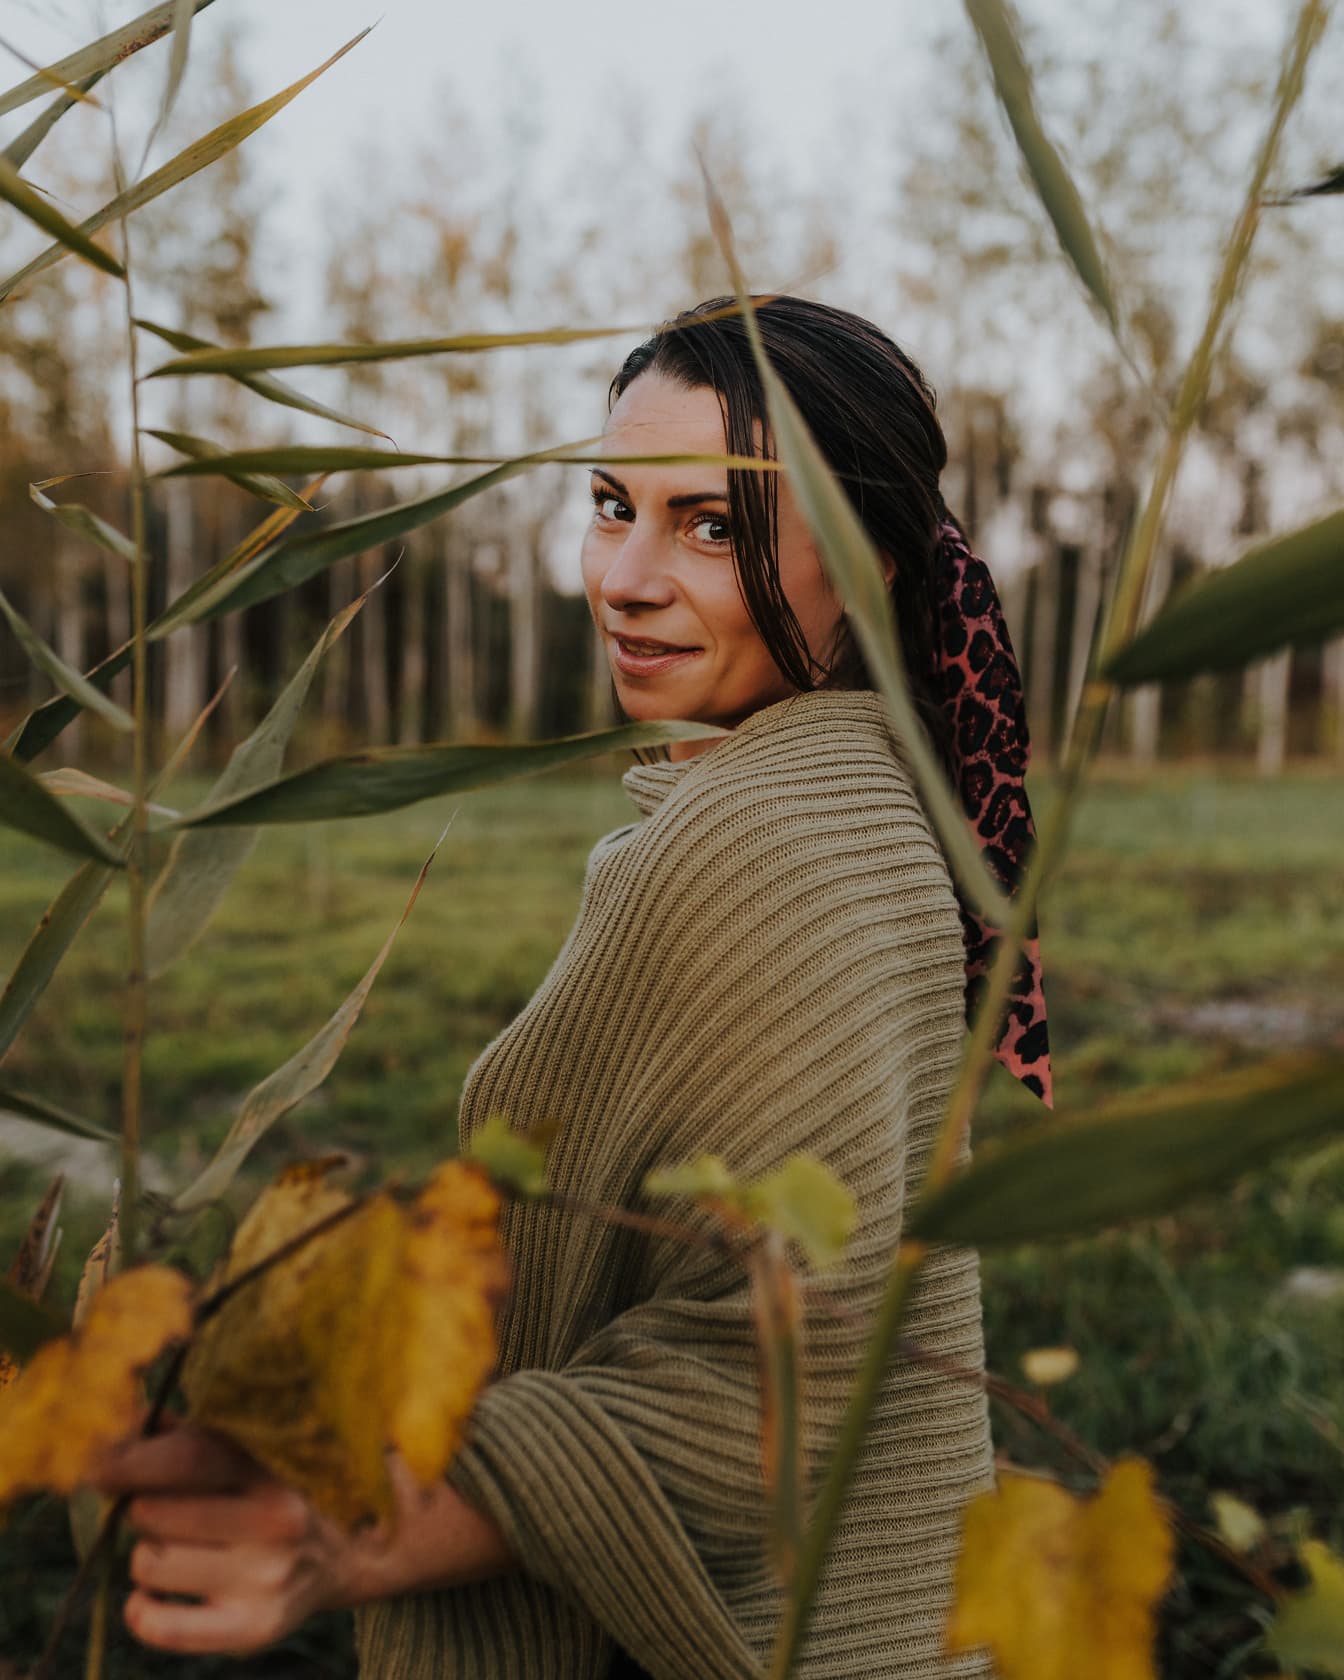 Cô gái tóc nâu xinh đẹp tạo dáng trong chiếc áo len ở vùng đầm lầy